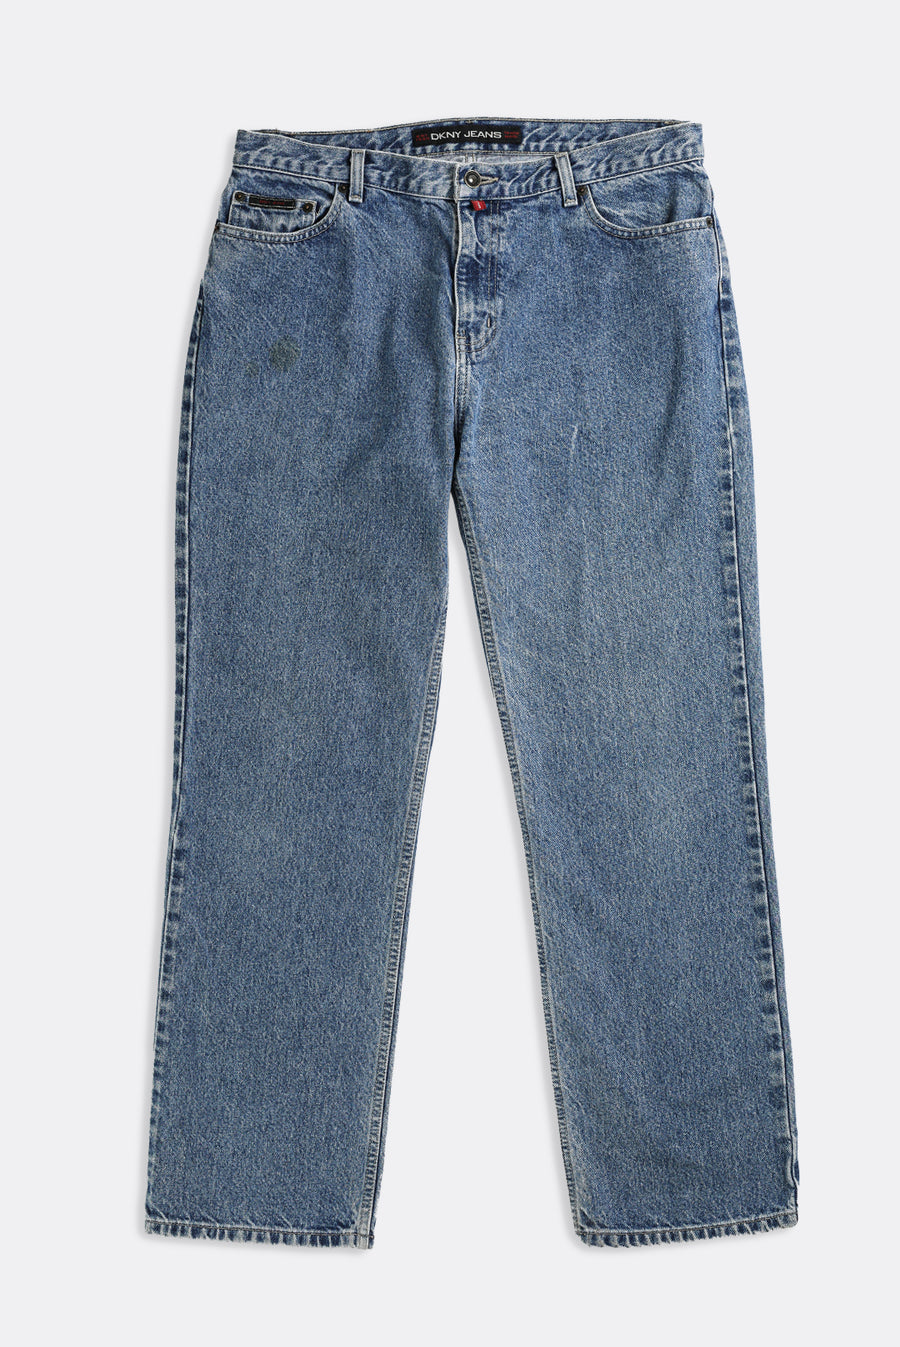 Vintage DKNY Jeans - W36